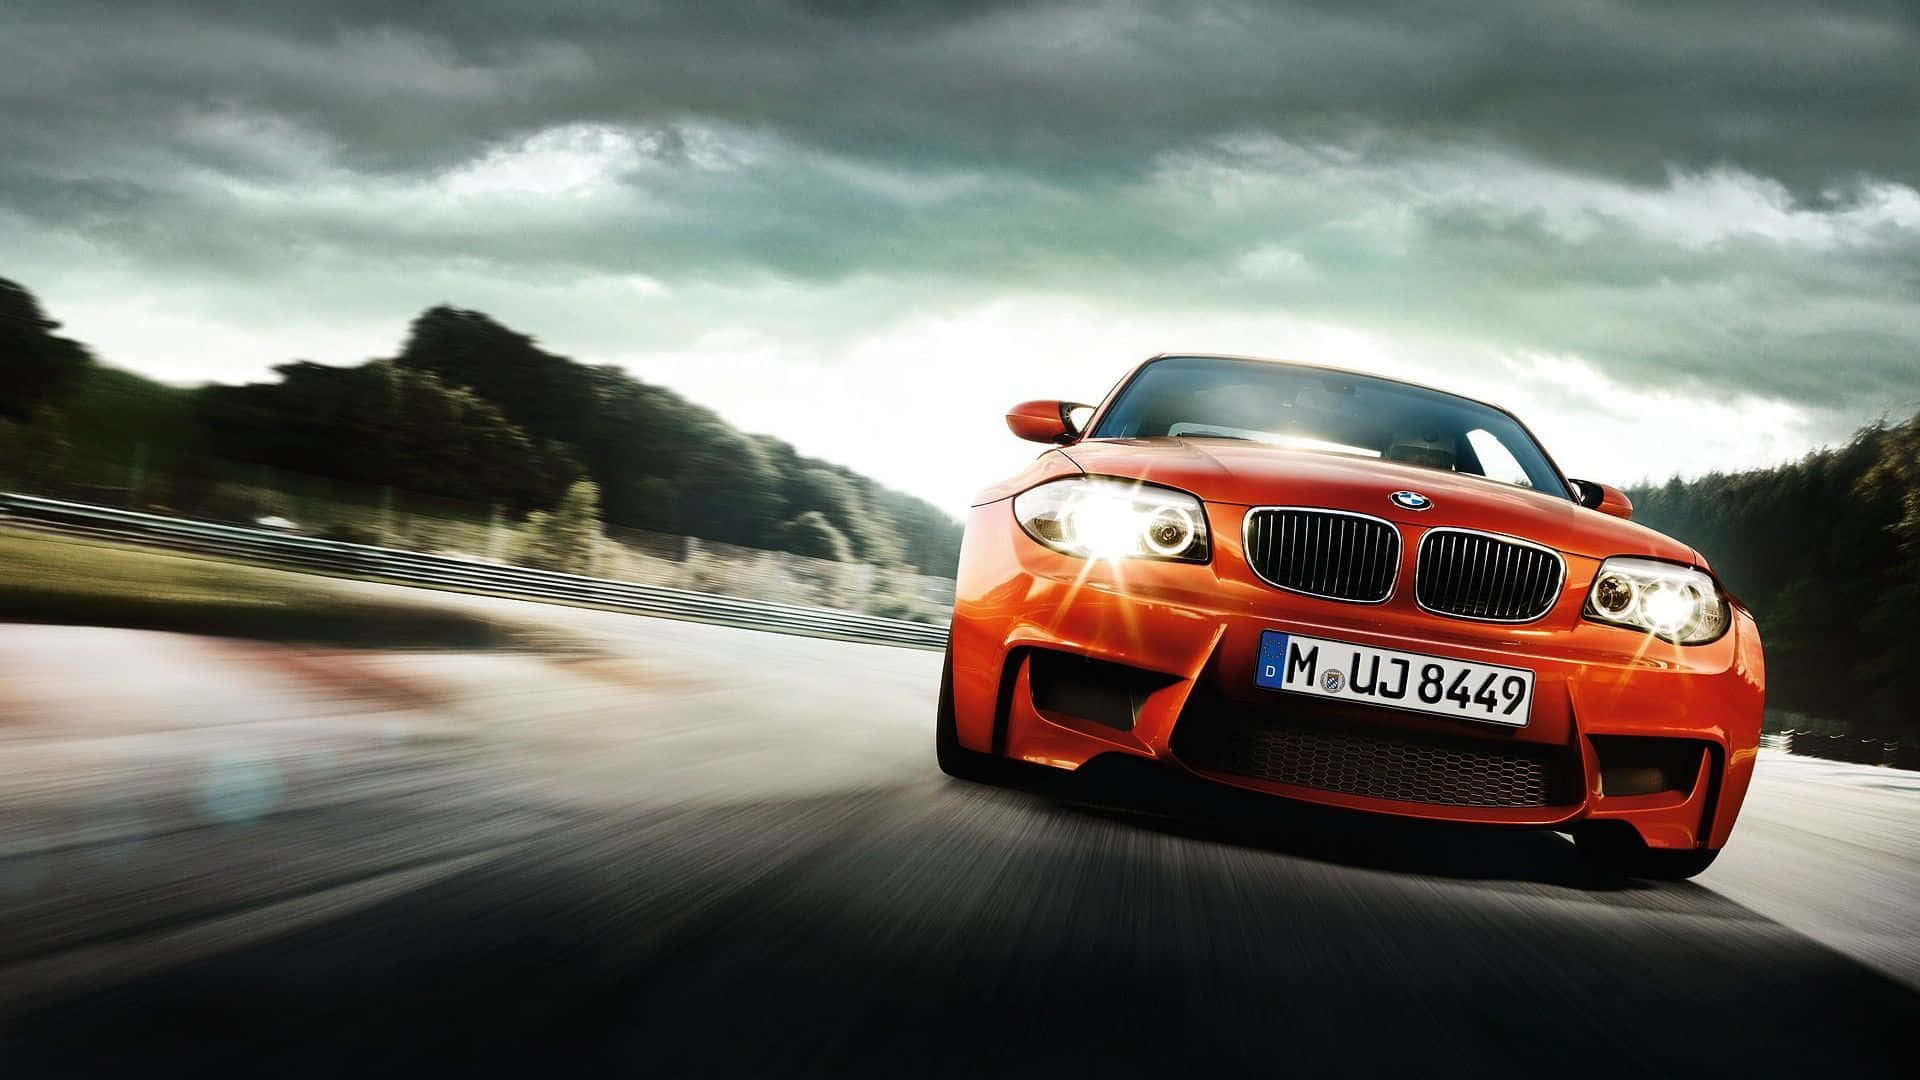 BMW – Levere luksus og magt på vejen Wallpaper